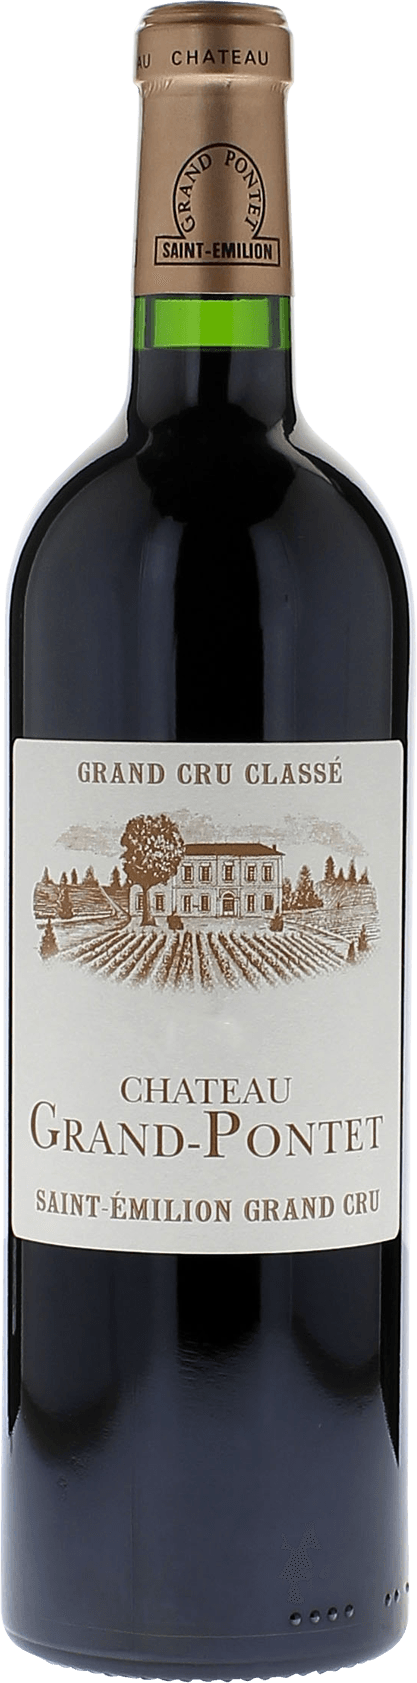 Grand pontet 2017 Grand cru class Saint-Emilion, Bordeaux rouge